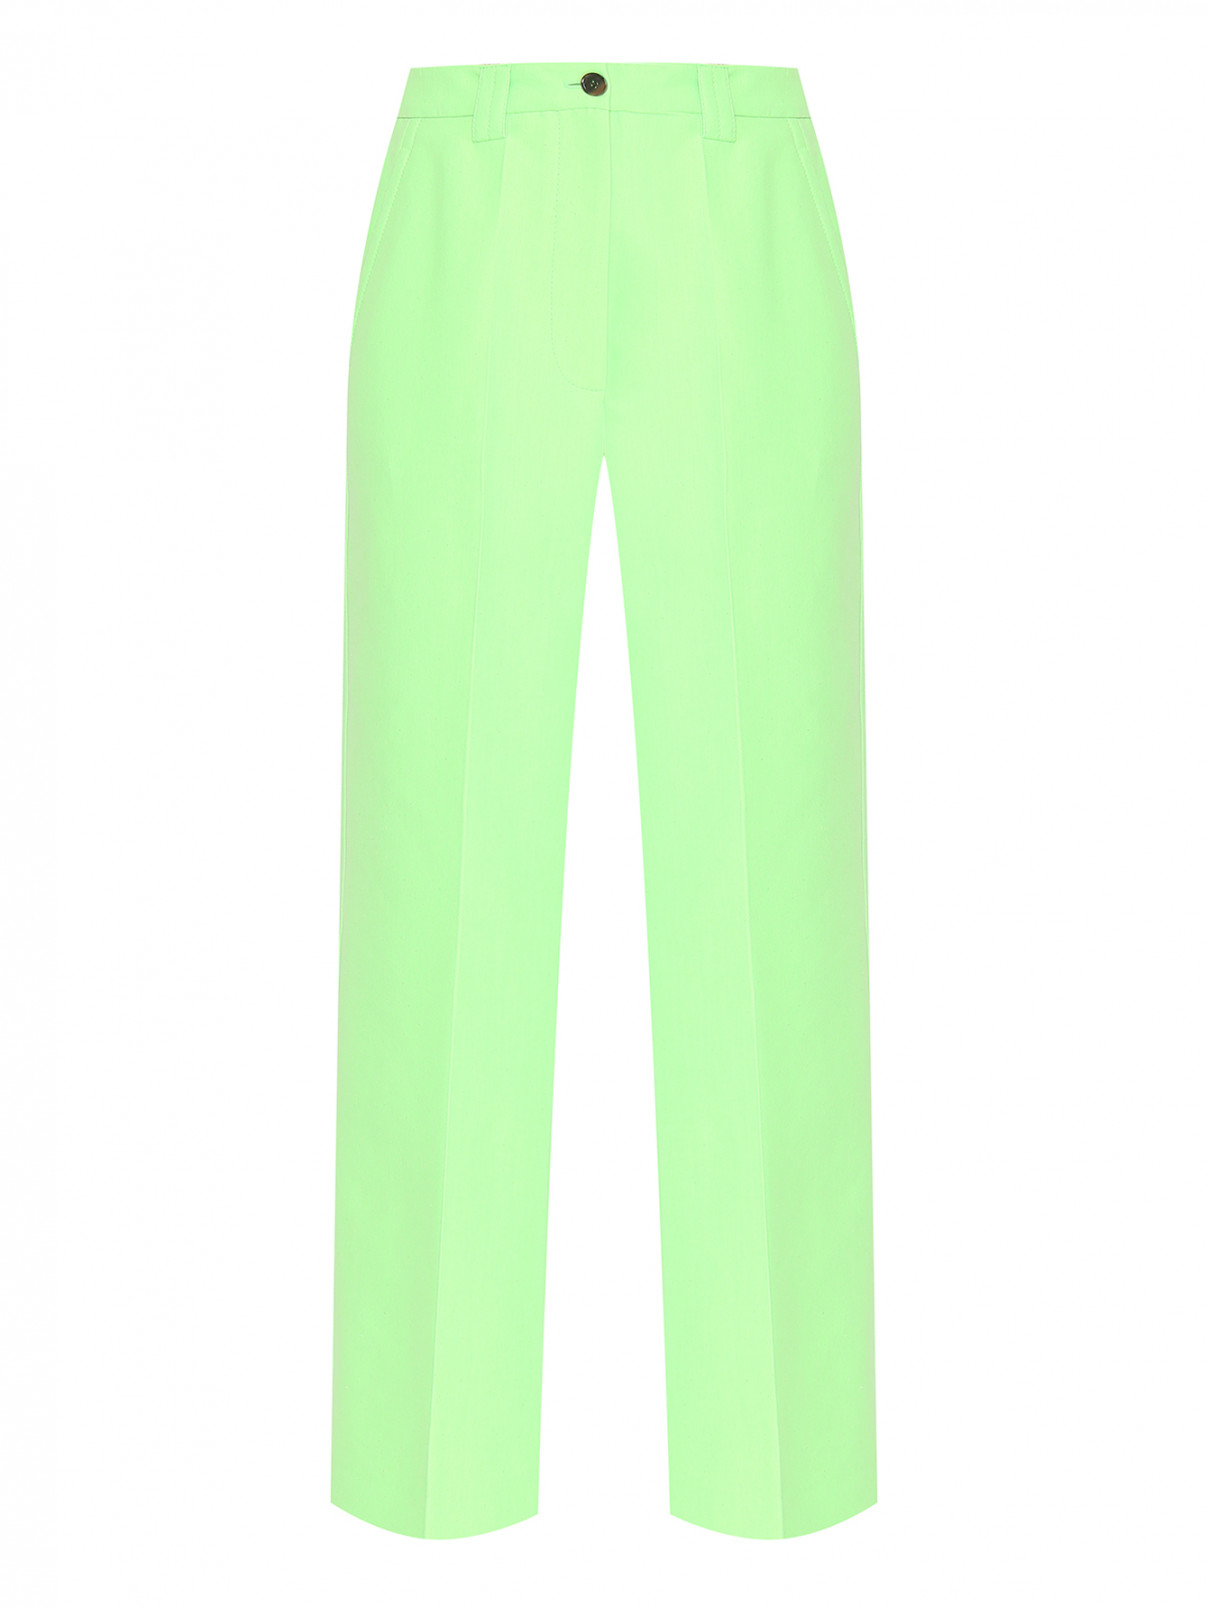 Широкие брюки со стрелками Essentiel Antwerp  –  Общий вид  – Цвет:  Зеленый